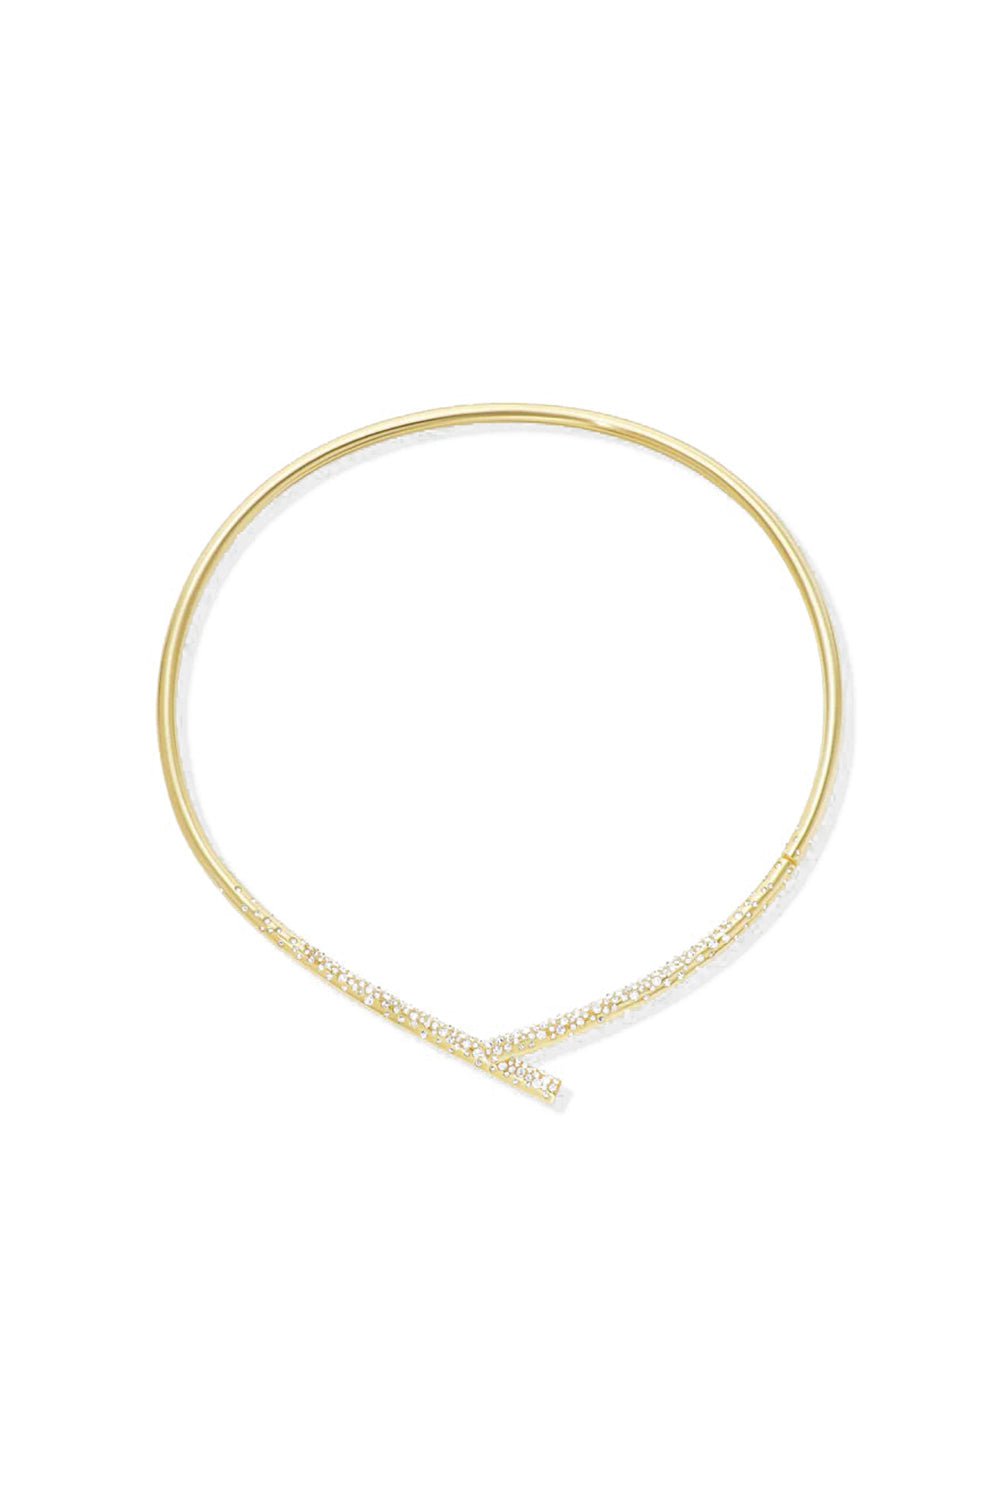 TABAYER-Oera Diamond Choker Necklace-YELLOW GOLD